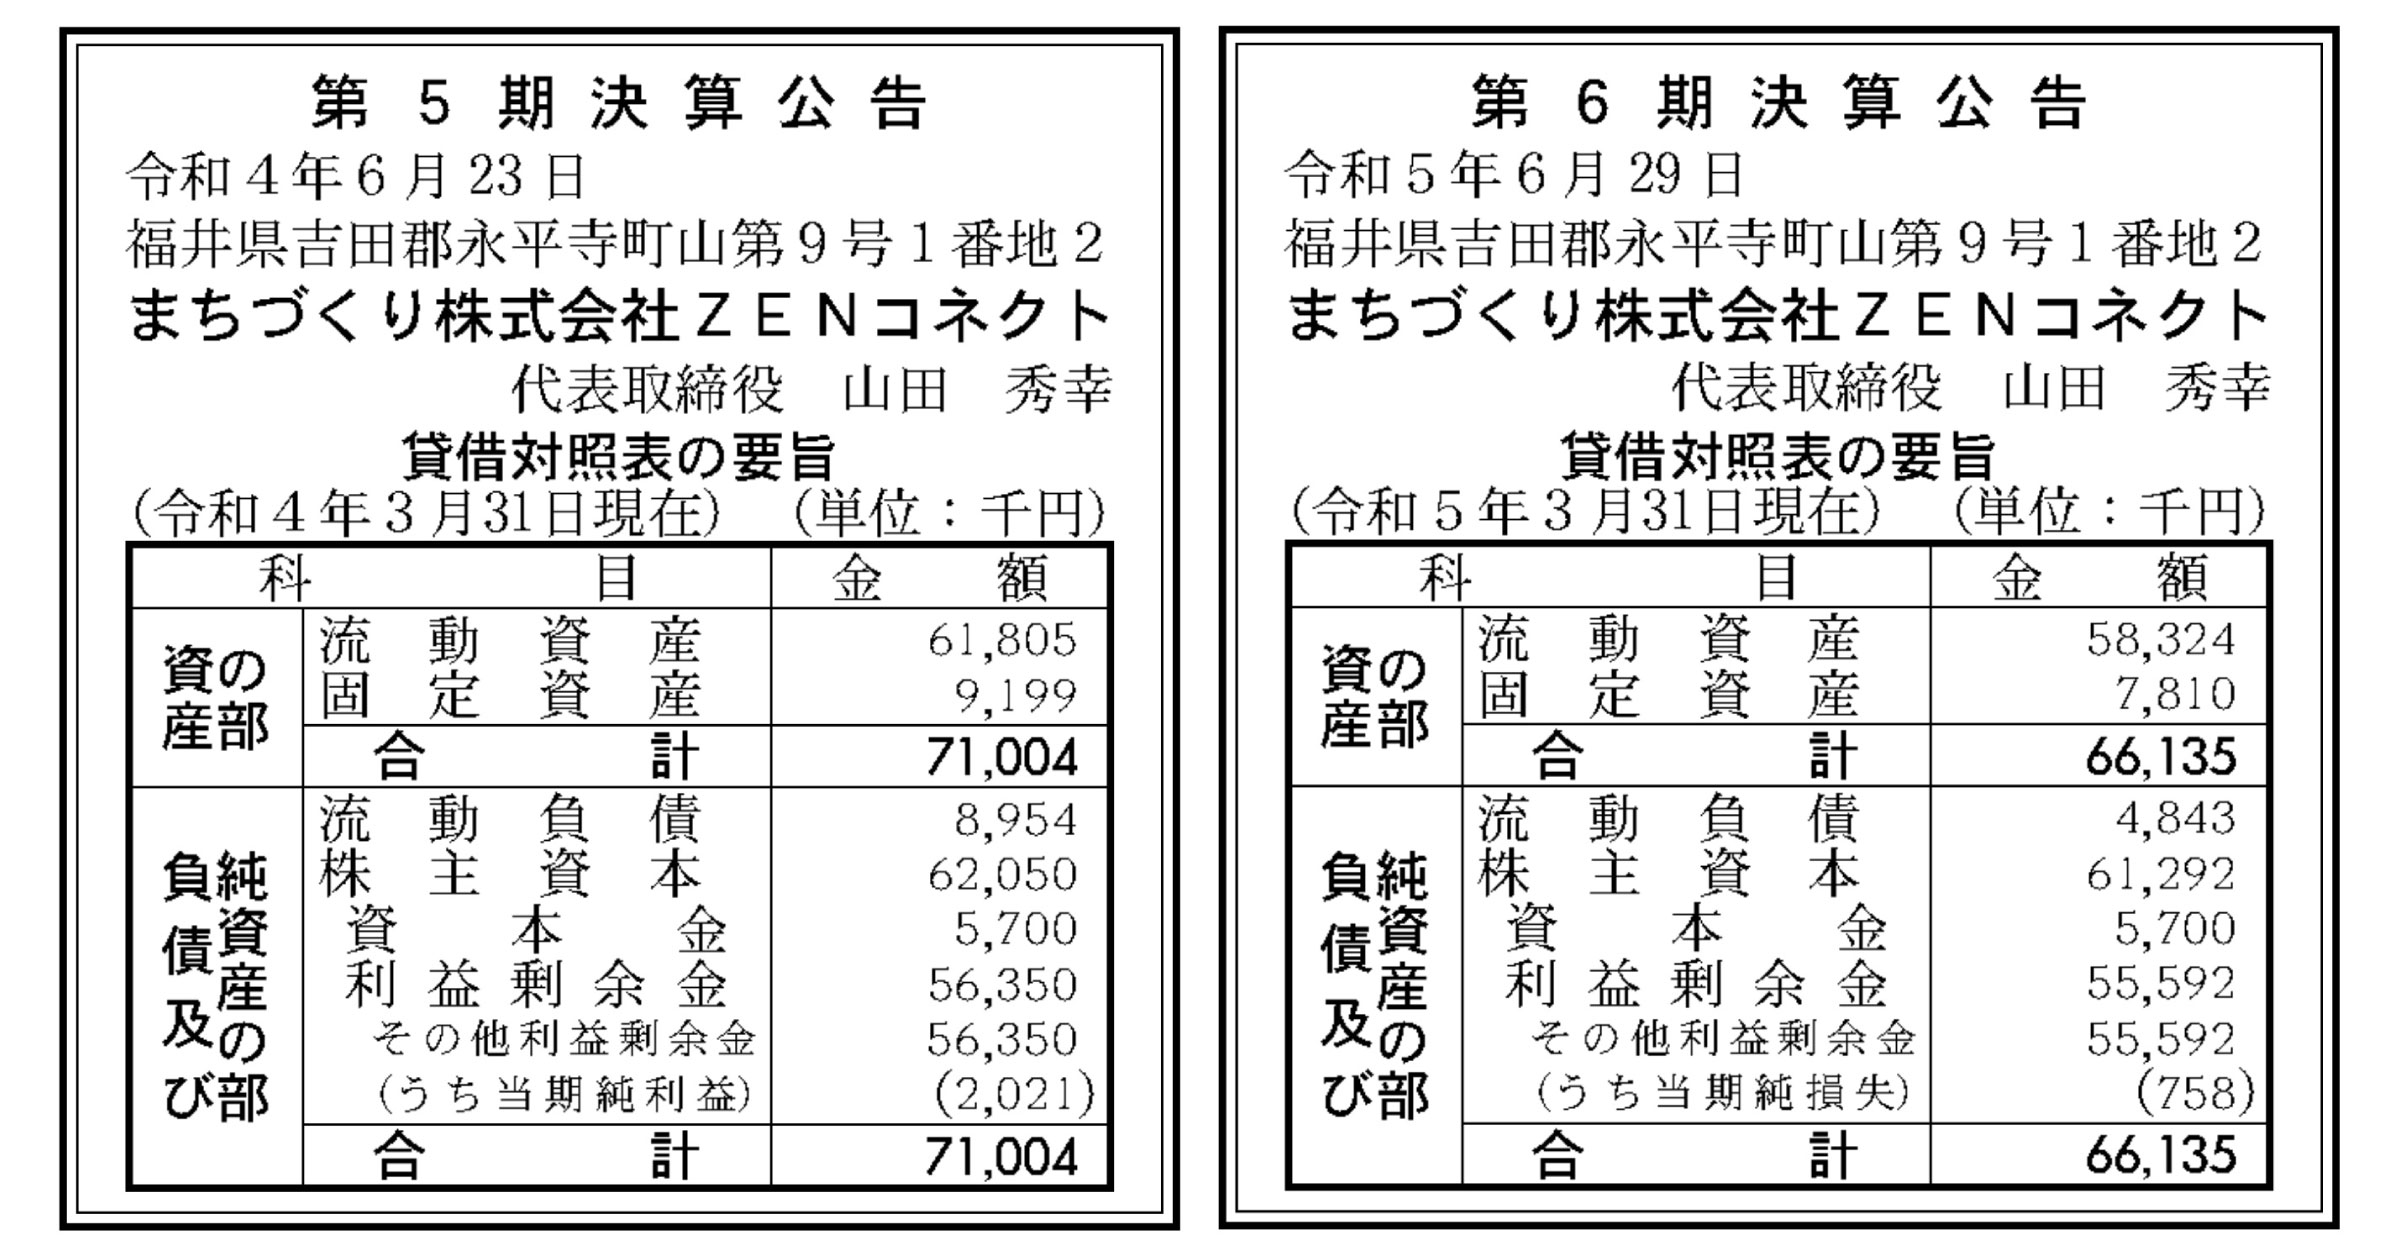 自動運転「日本初レベル4」のZENコネクト、第6期は赤字転落